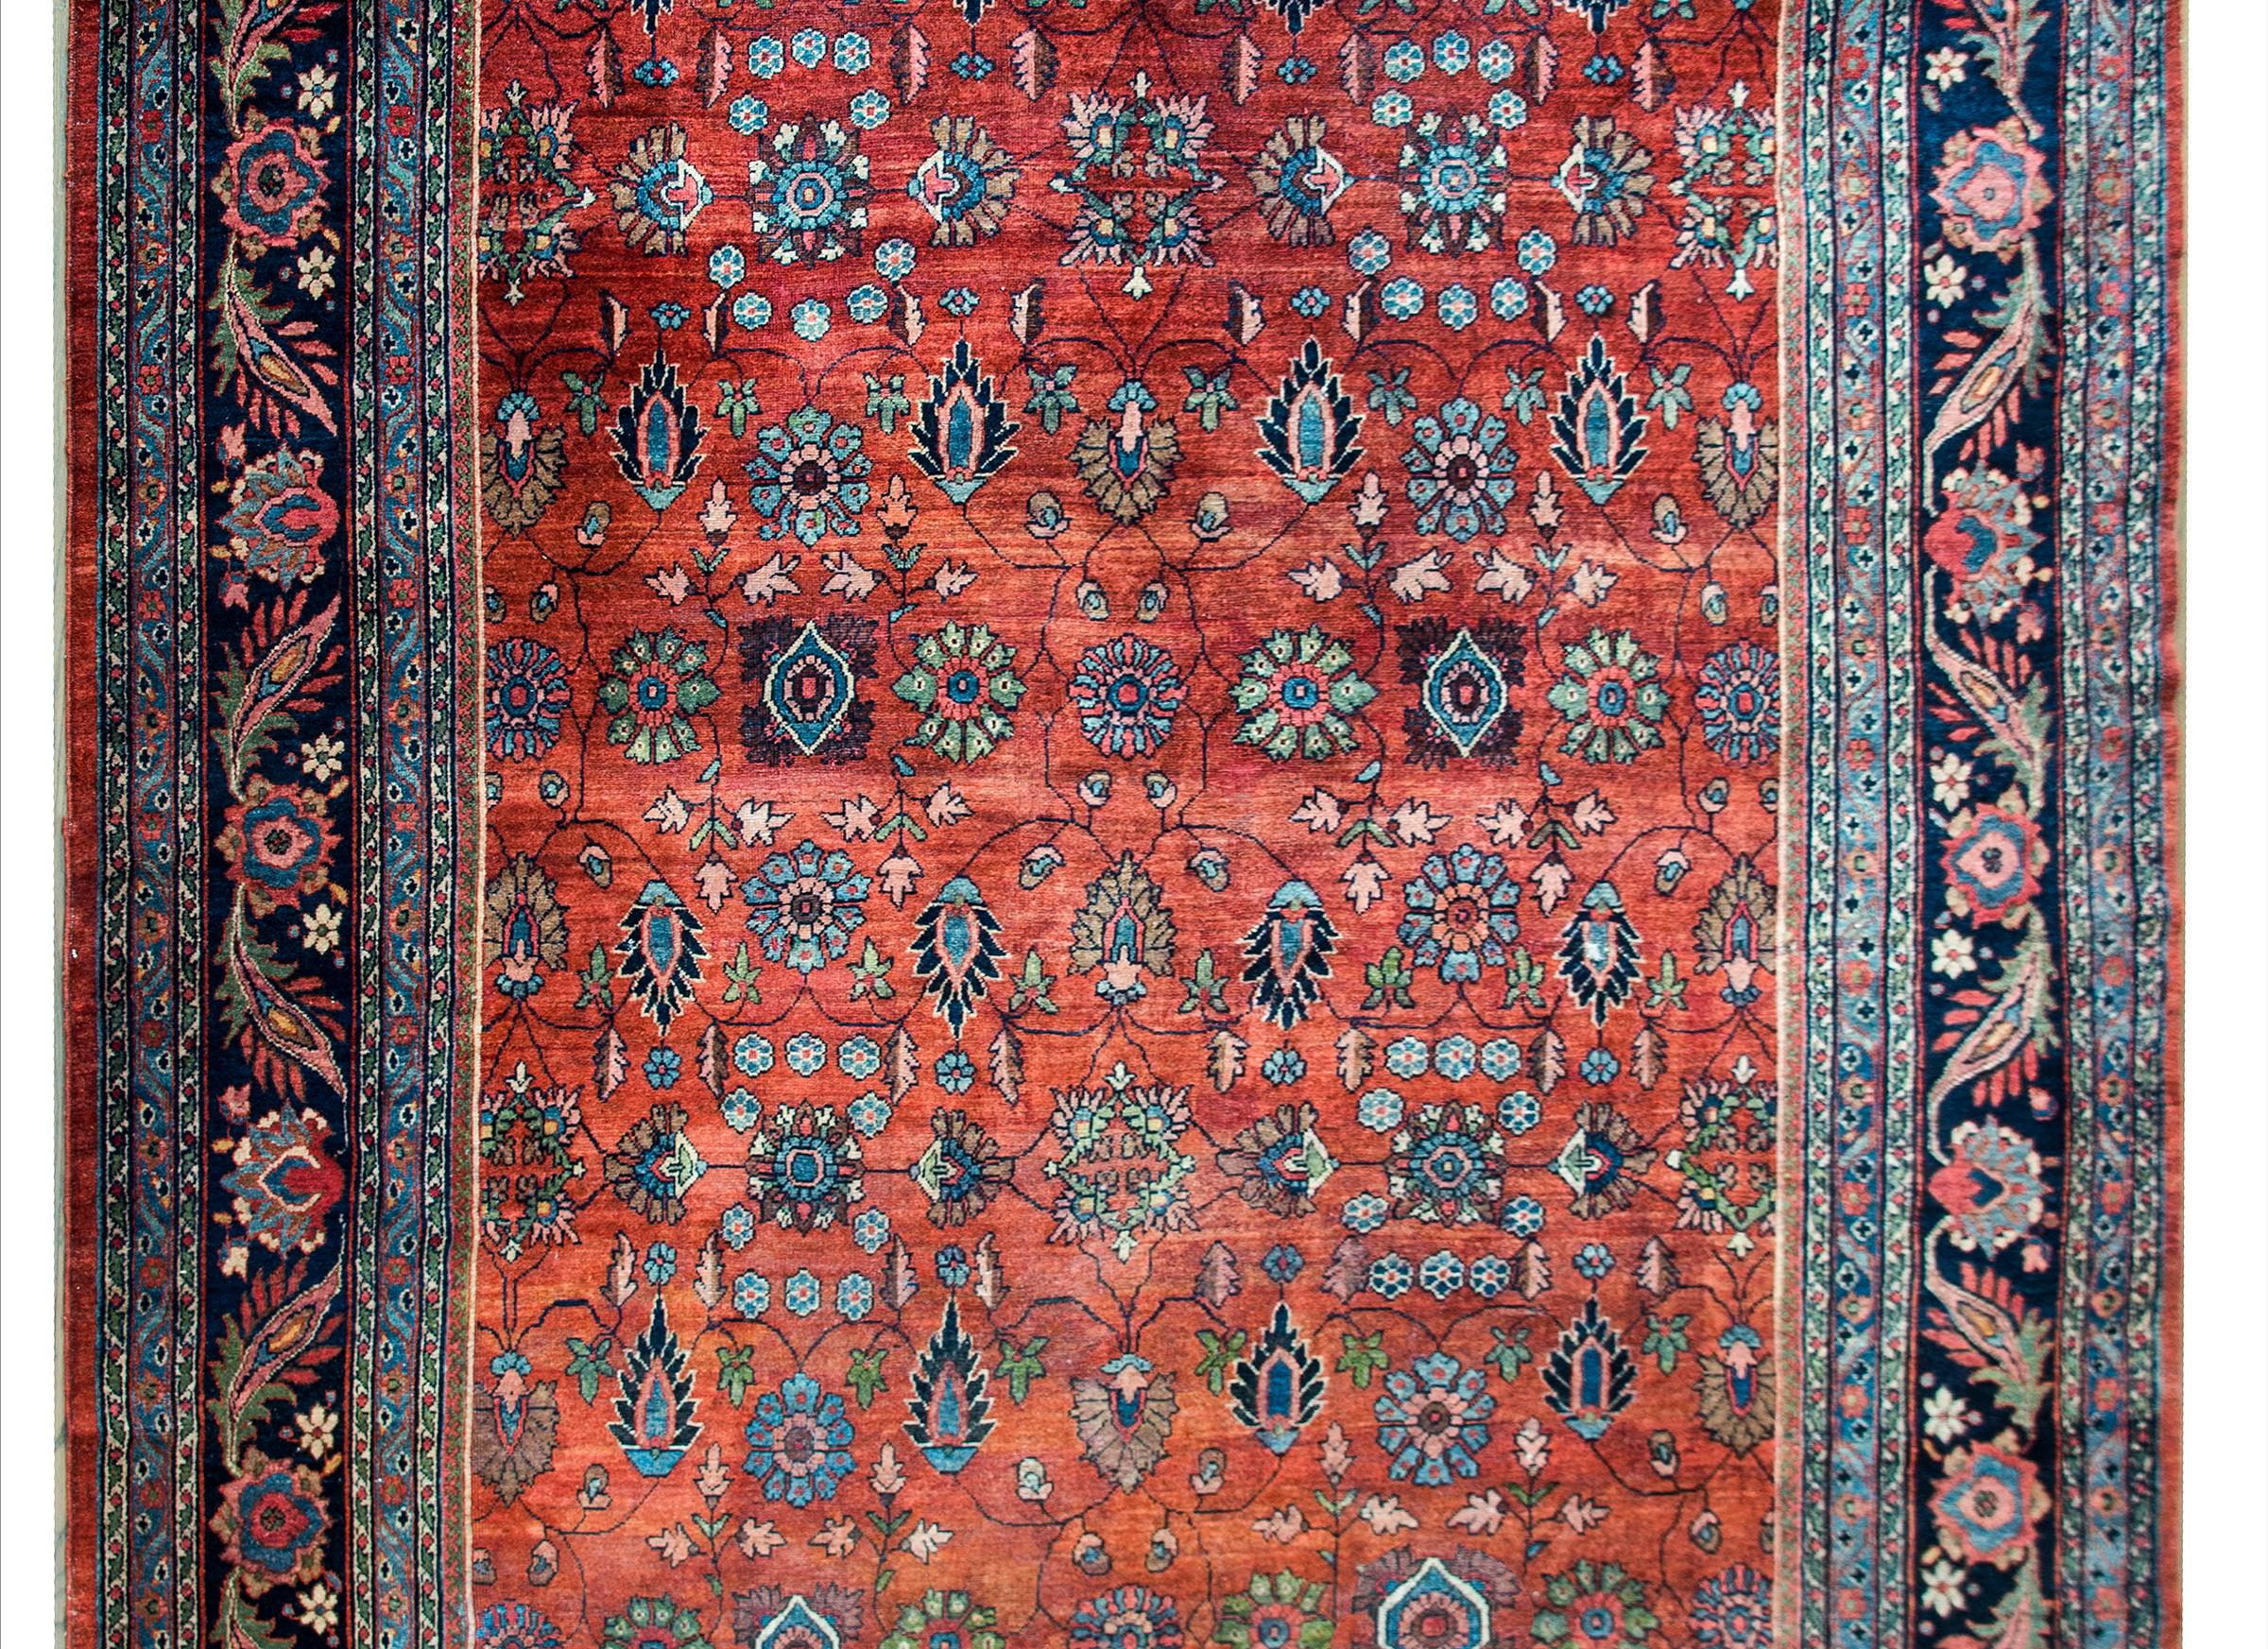 Magnifique tapis persan Sarouk Mahal du début du 20e siècle, avec un motif floral sur toute la surface, avec des myriades de fleurs et de fines vignes défilantes tissées en indigo, brun, crème et rose, sur un fond cramoisi. La bordure est complexe